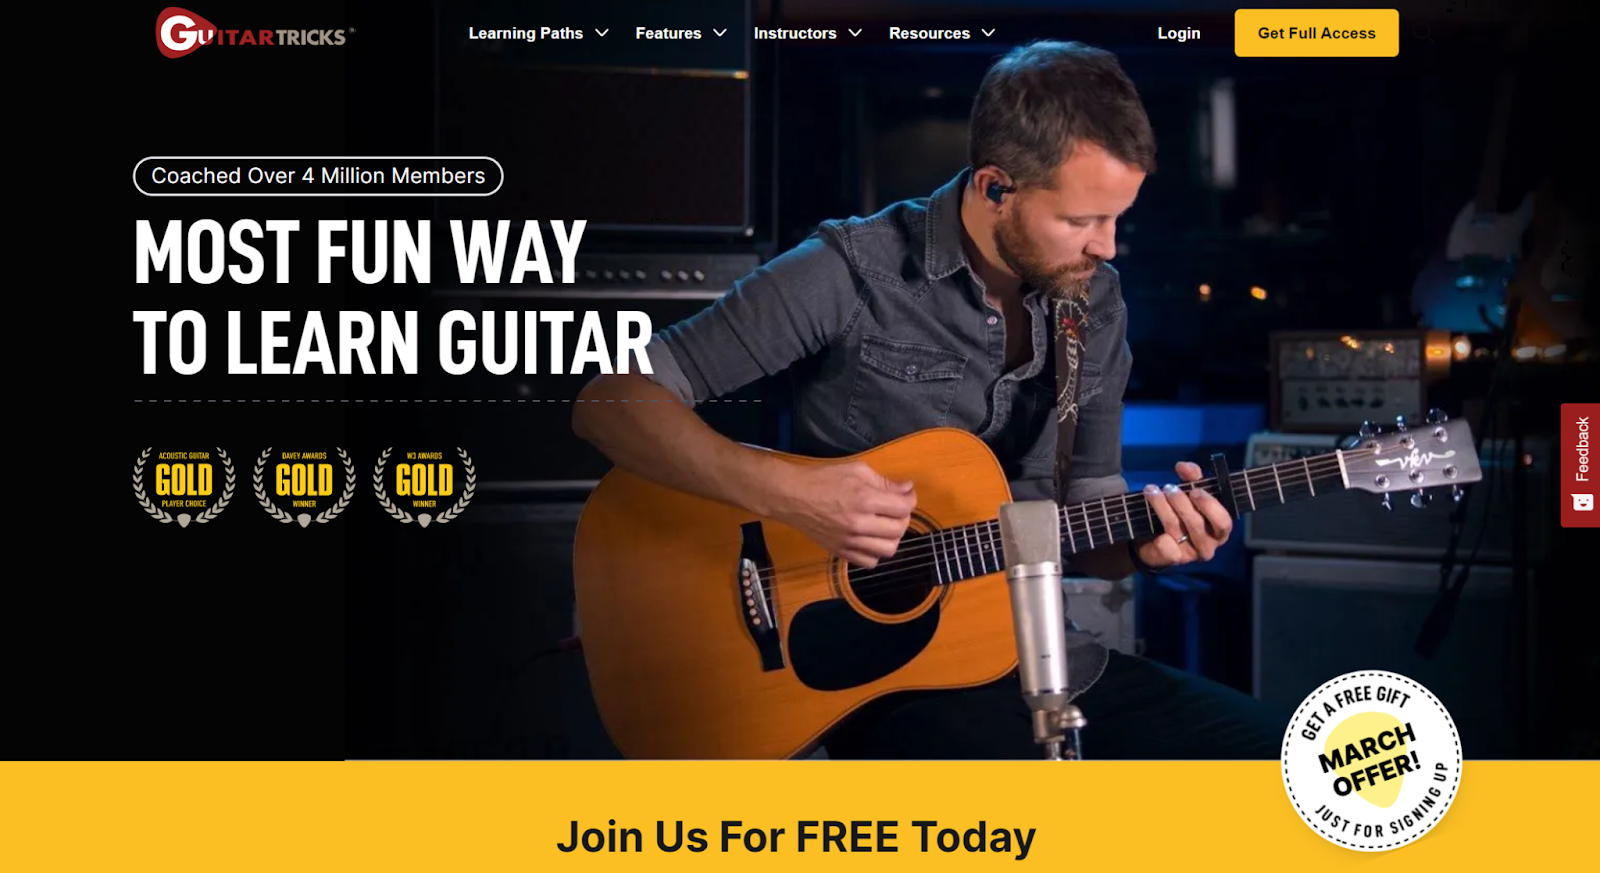 Guitar Tricks website home page